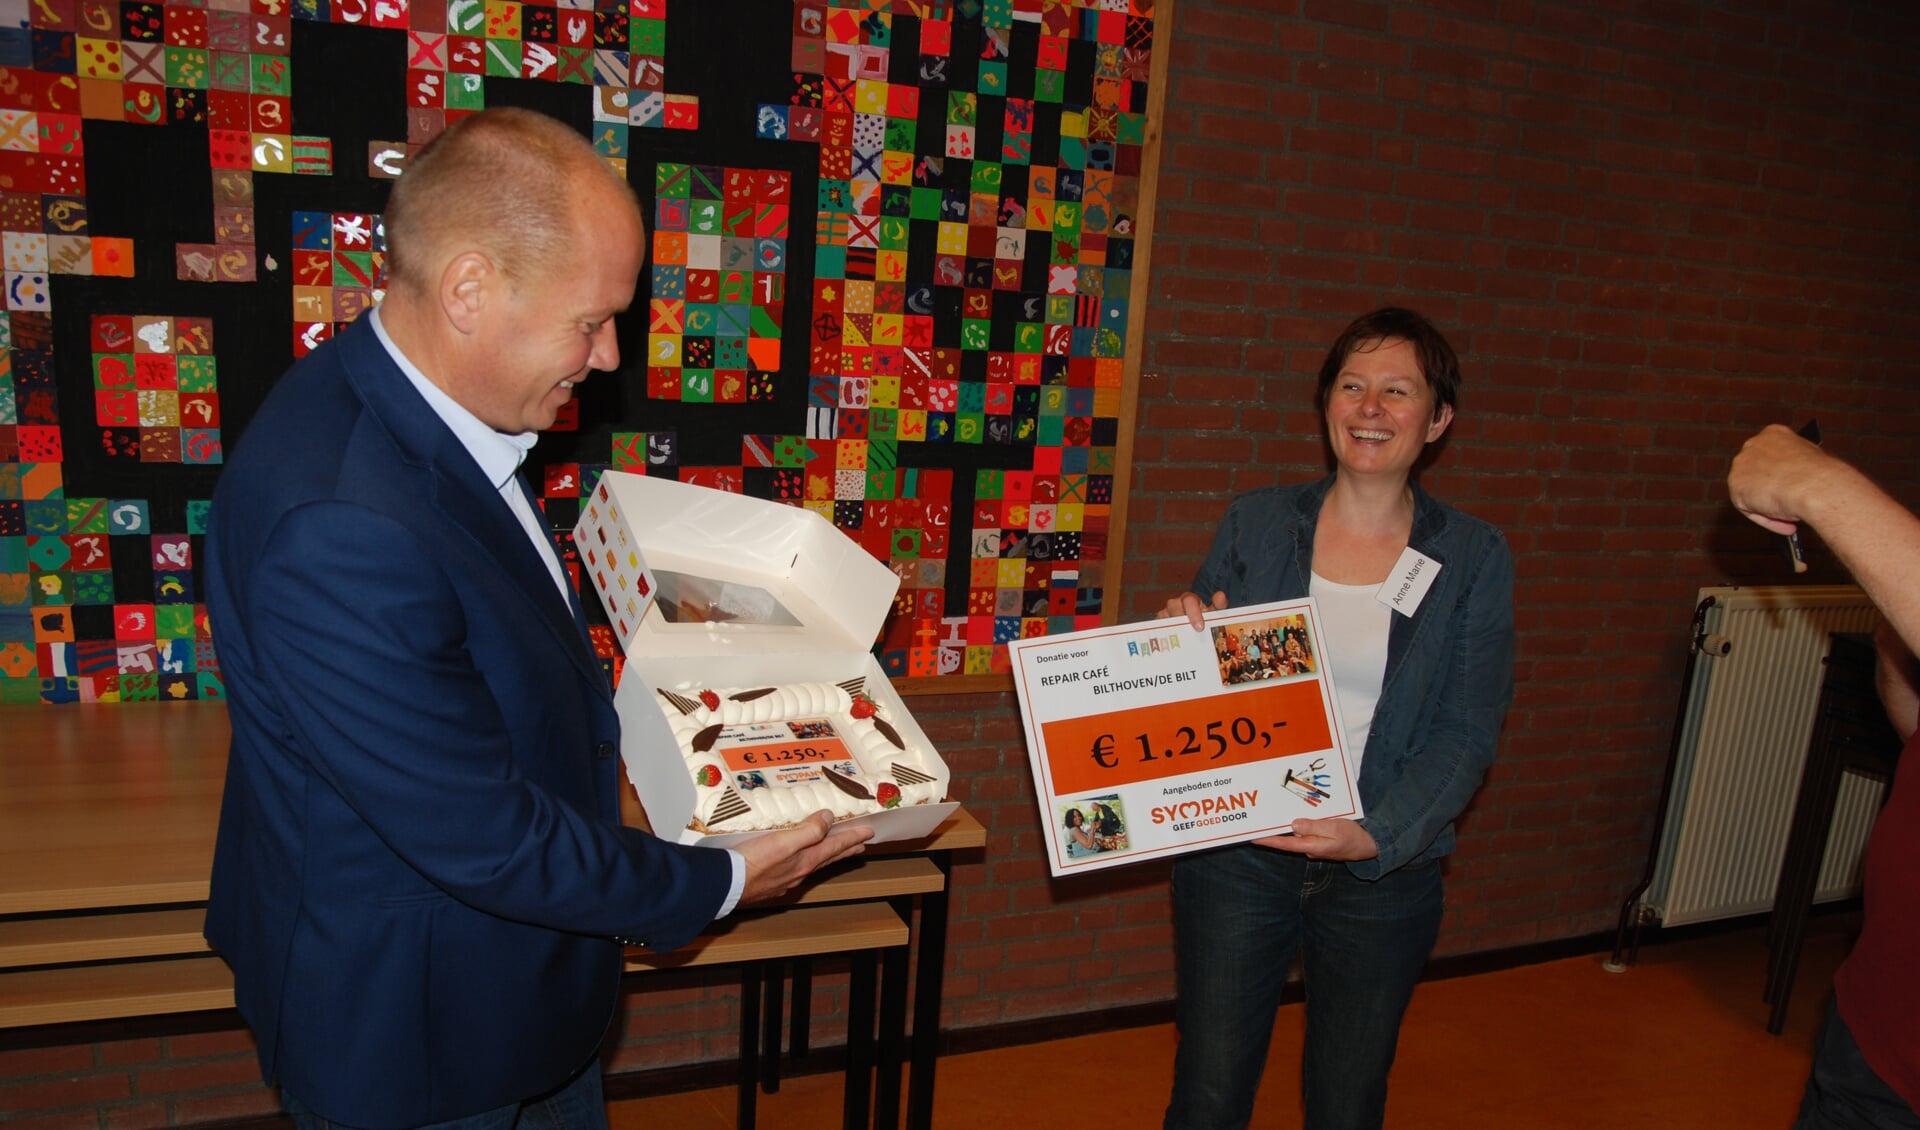 Anne Marie Gout, organisatrice van Repair Café Bilthoven, ontvangt uit handen van Martijn van Veenendaal de gulle gift van Sympany. Voor bij de koffie van de vrijwilligers bracht hij een heerlijke slagroomtaart.